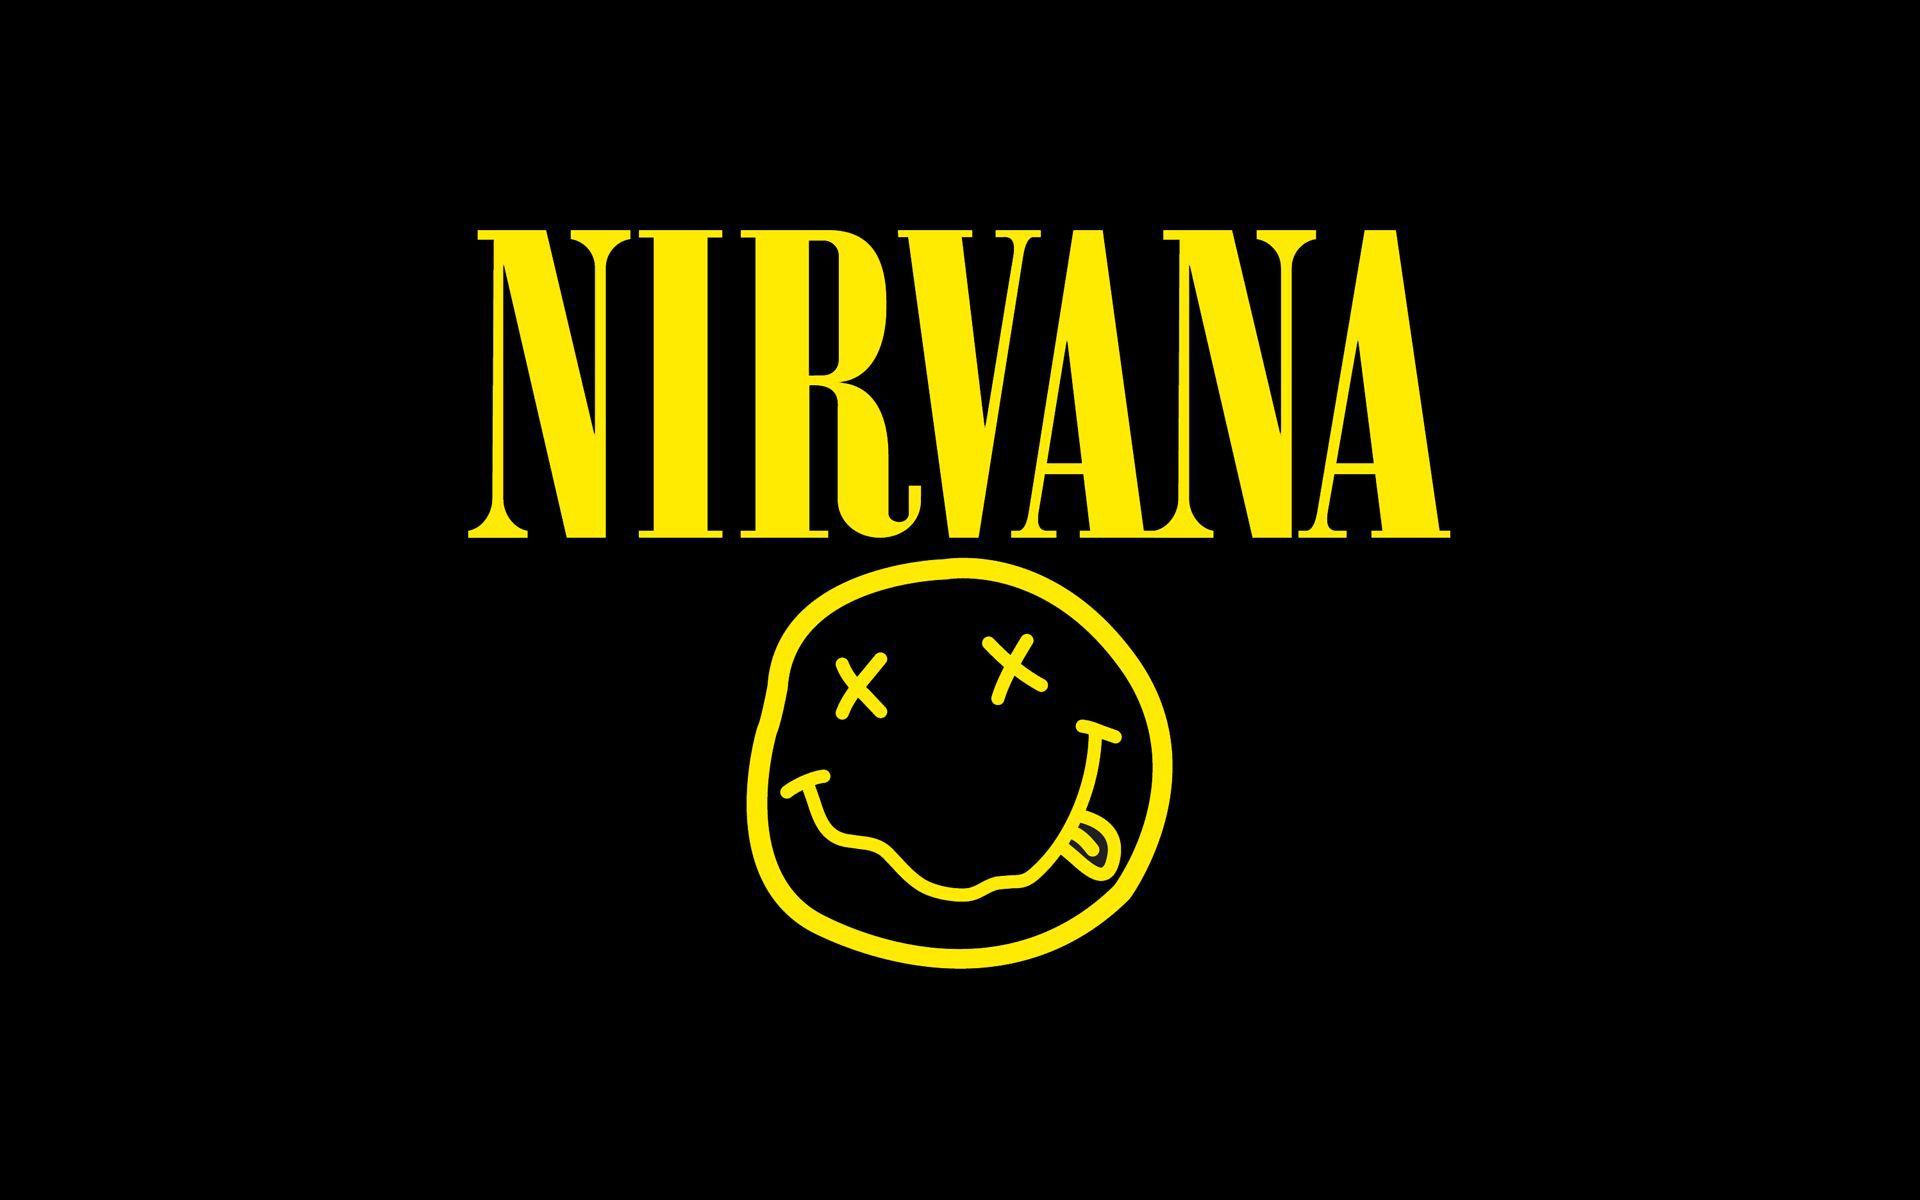 Nirvana Wallpaper. Nirvana logo, Nirvana wallpaper, Nirvana logo wallpaper